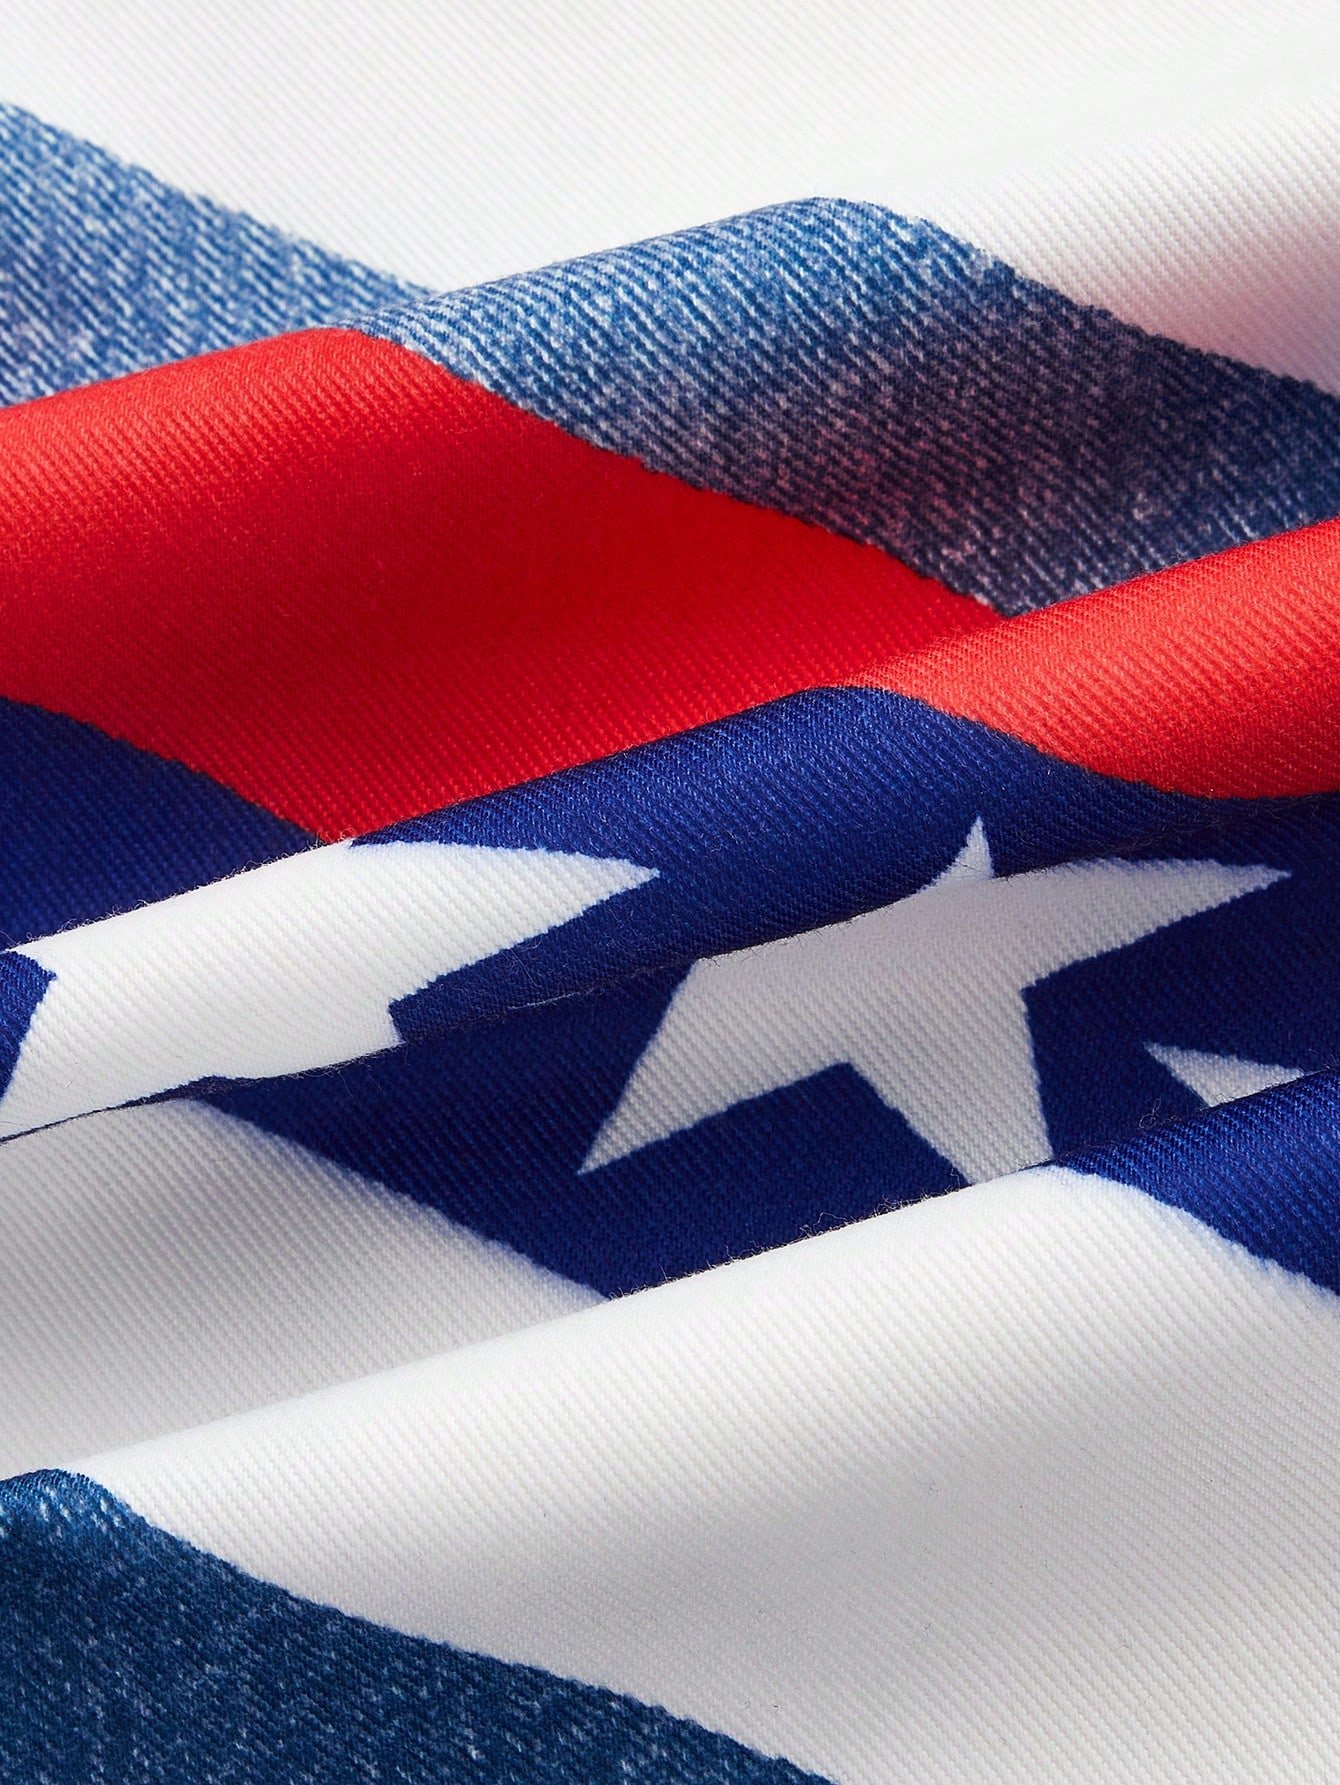 アメリカ4日の祭り カラーブロック レディースフレアパンツ、ポケット付き USA国旗 グラフィック印刷